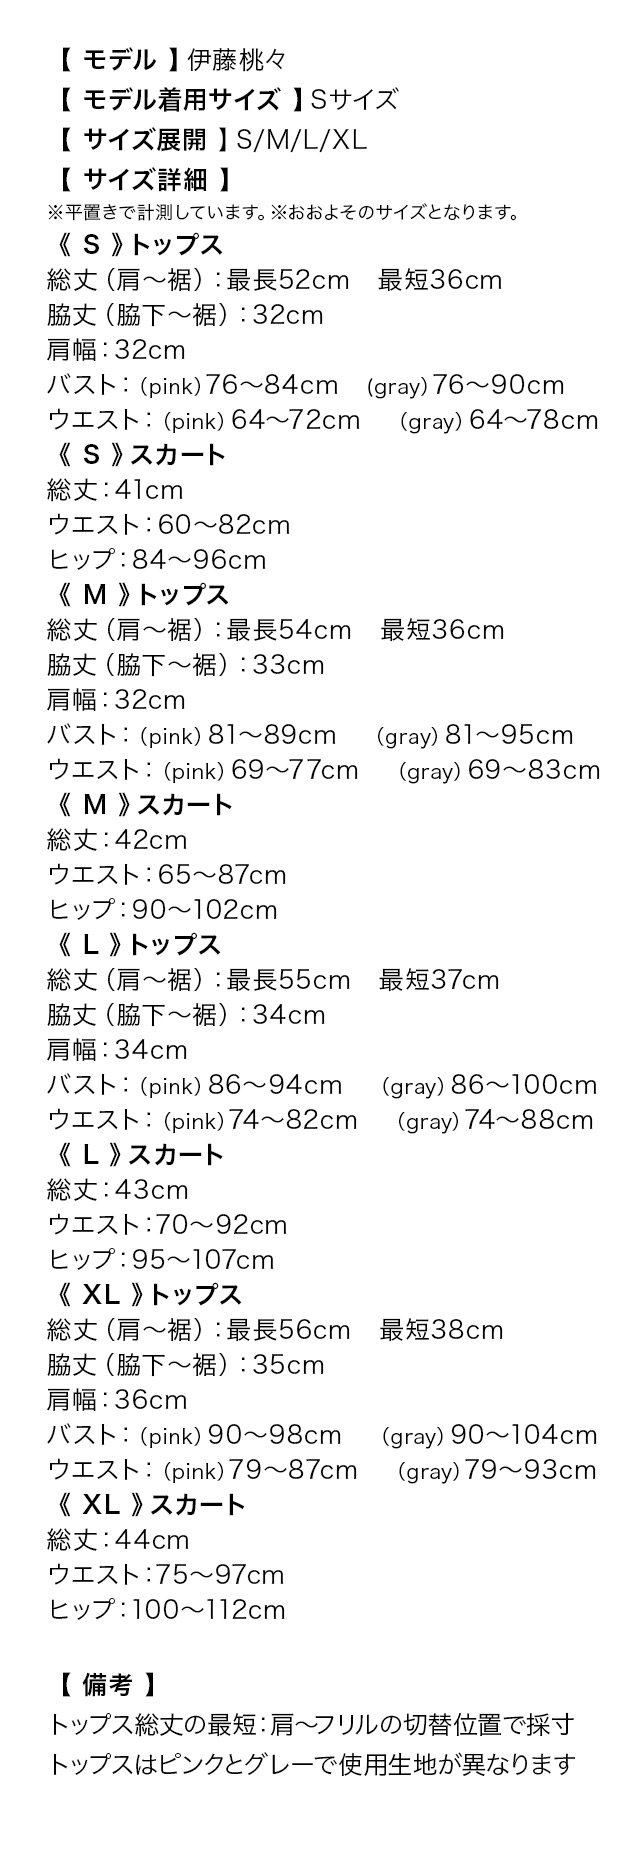 Vネックフリルぺプラムトップス×タイトミニスカートセットアップドレスのサイズ表